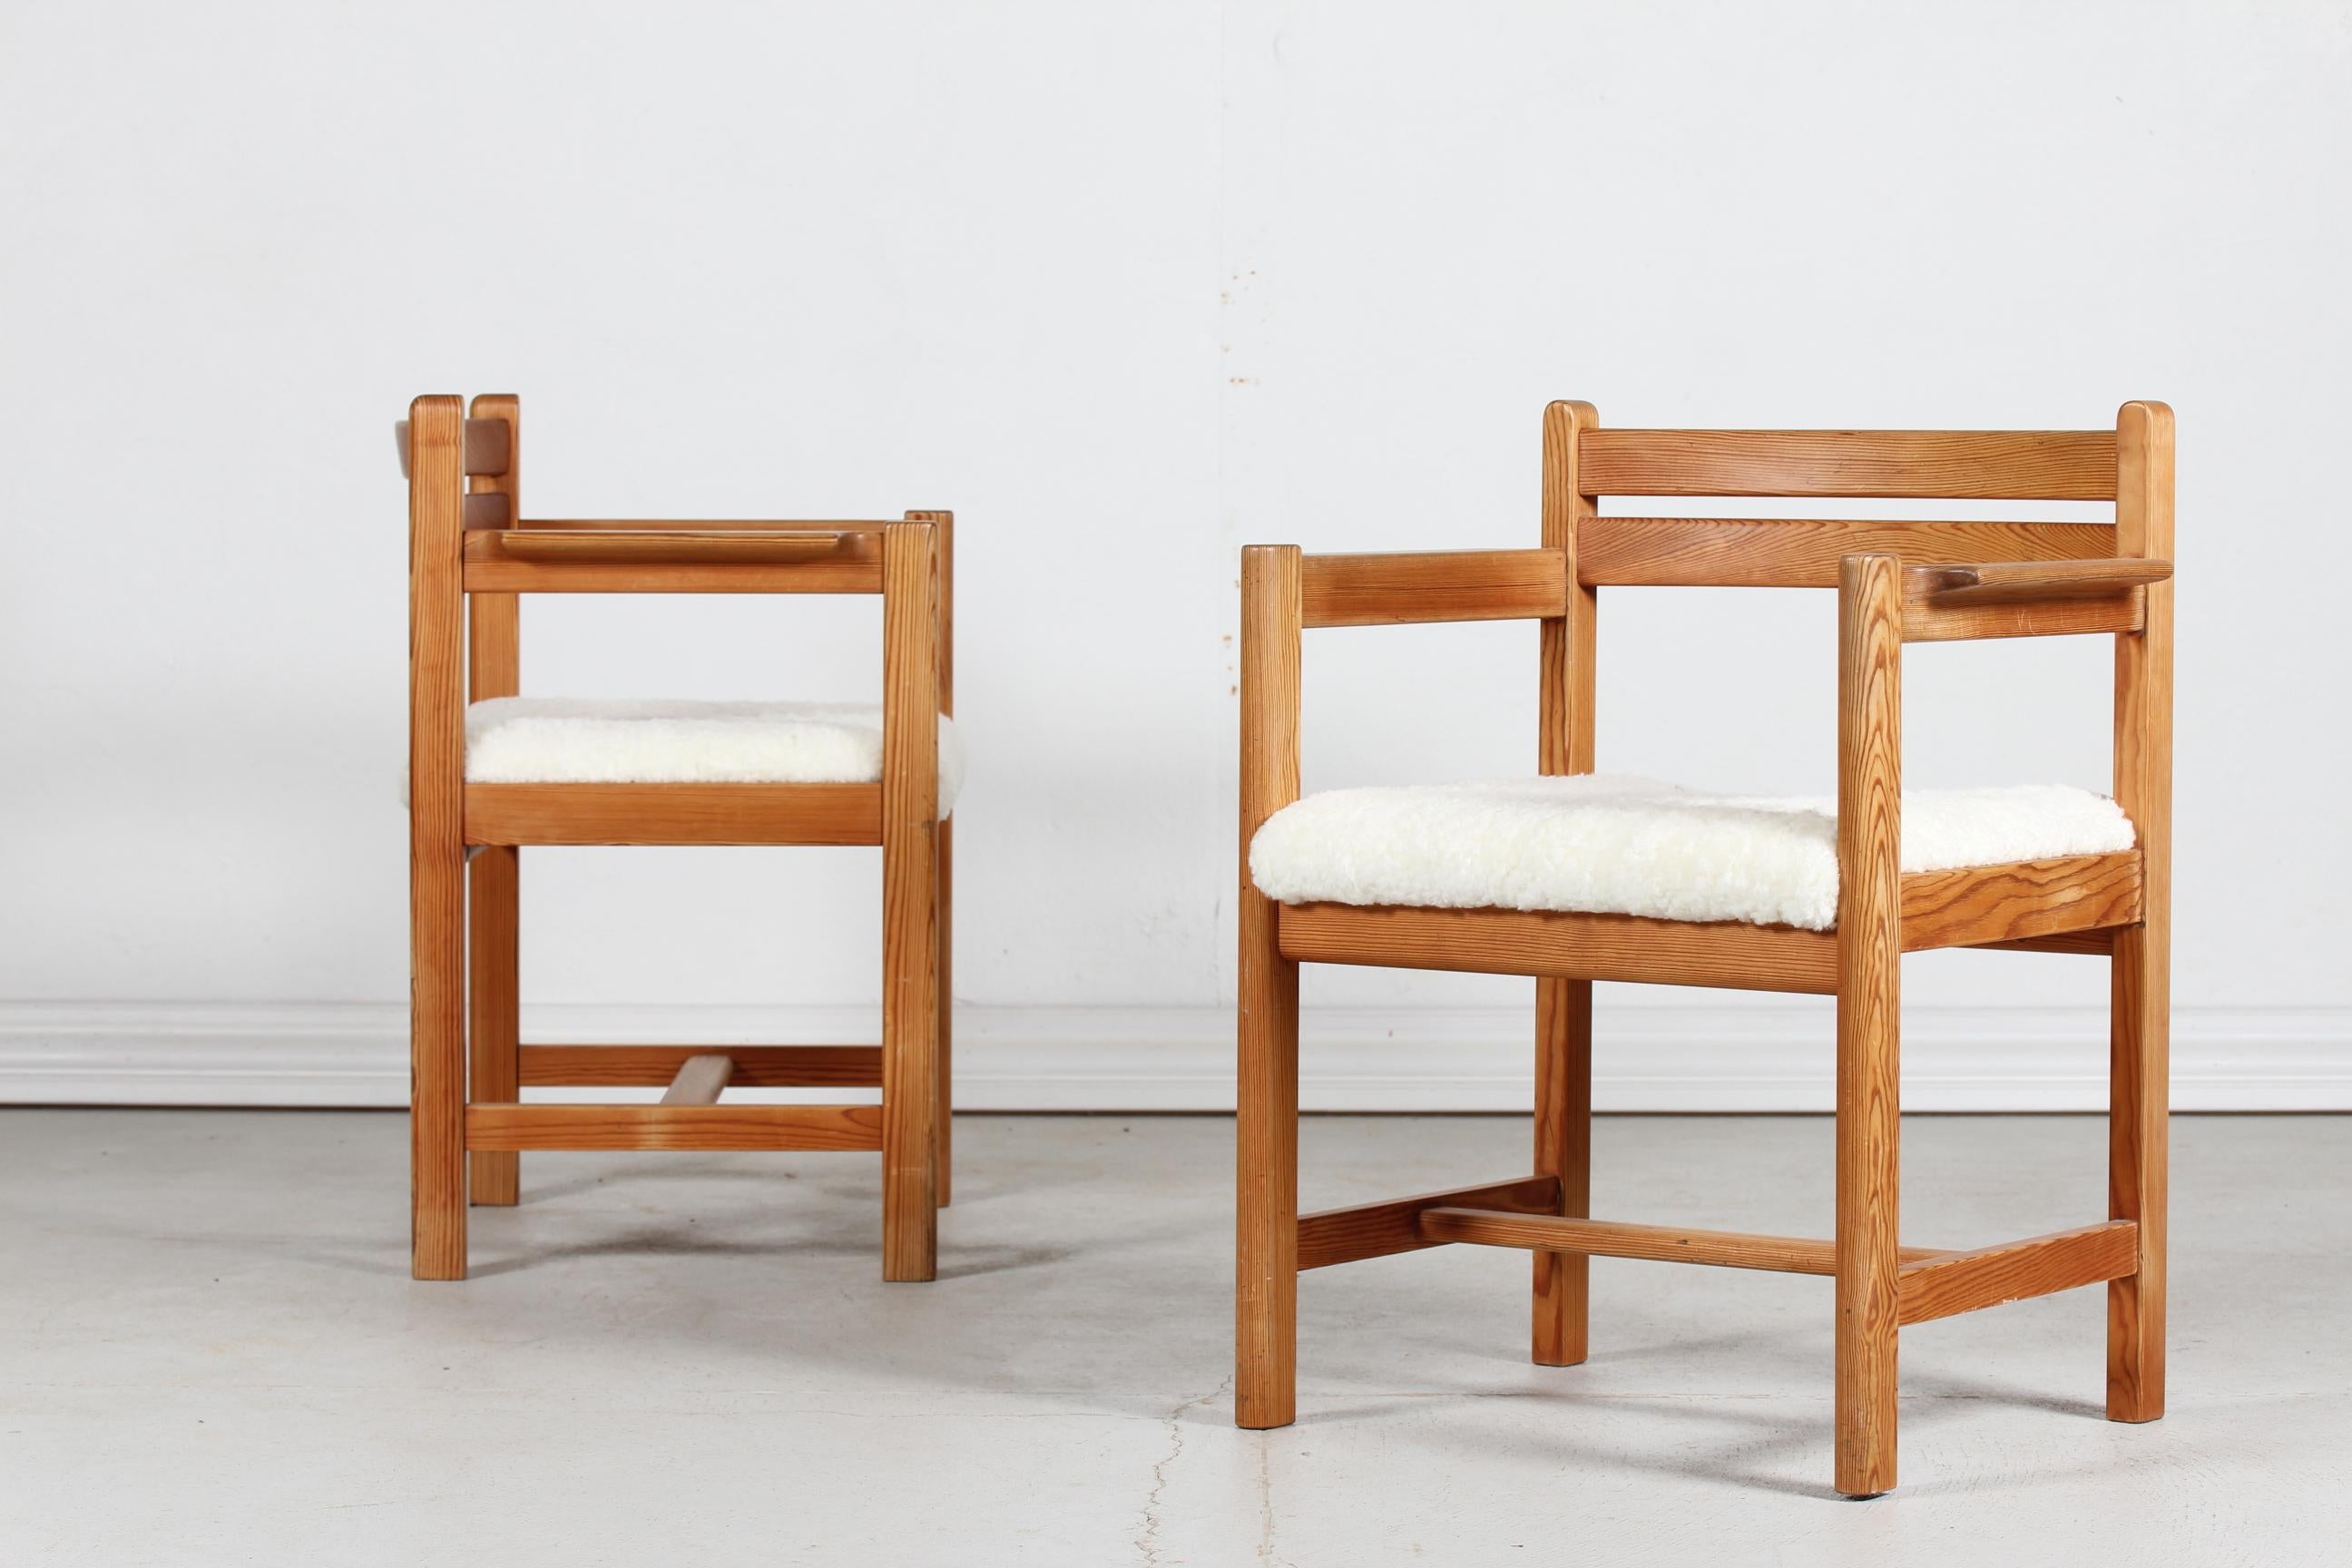 Satz von zwei Sesseln des dänischen Möbeldesigners Børge Mogensen (1914-1972), Modell 503 aus der Asserbo-Serie.
Hergestellt von Karl Andersson & Sons in Schweden in den 1970er Jahren

Die Stühle sind aus massivem Kiefernholz gefertigt, die Sitze